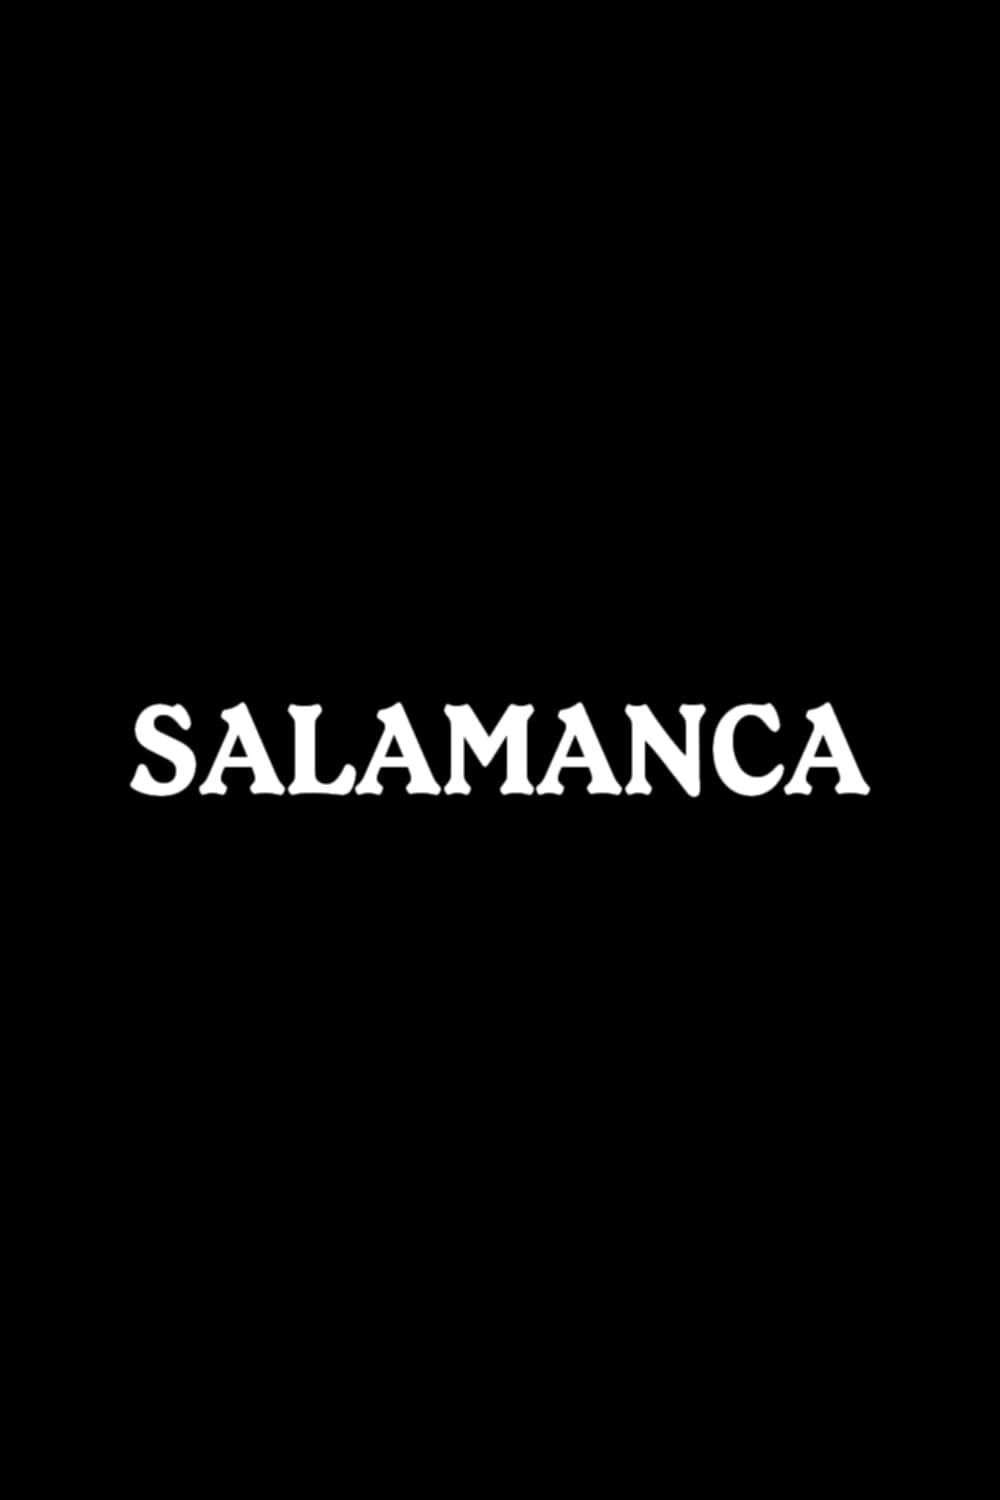 Salamanca poster